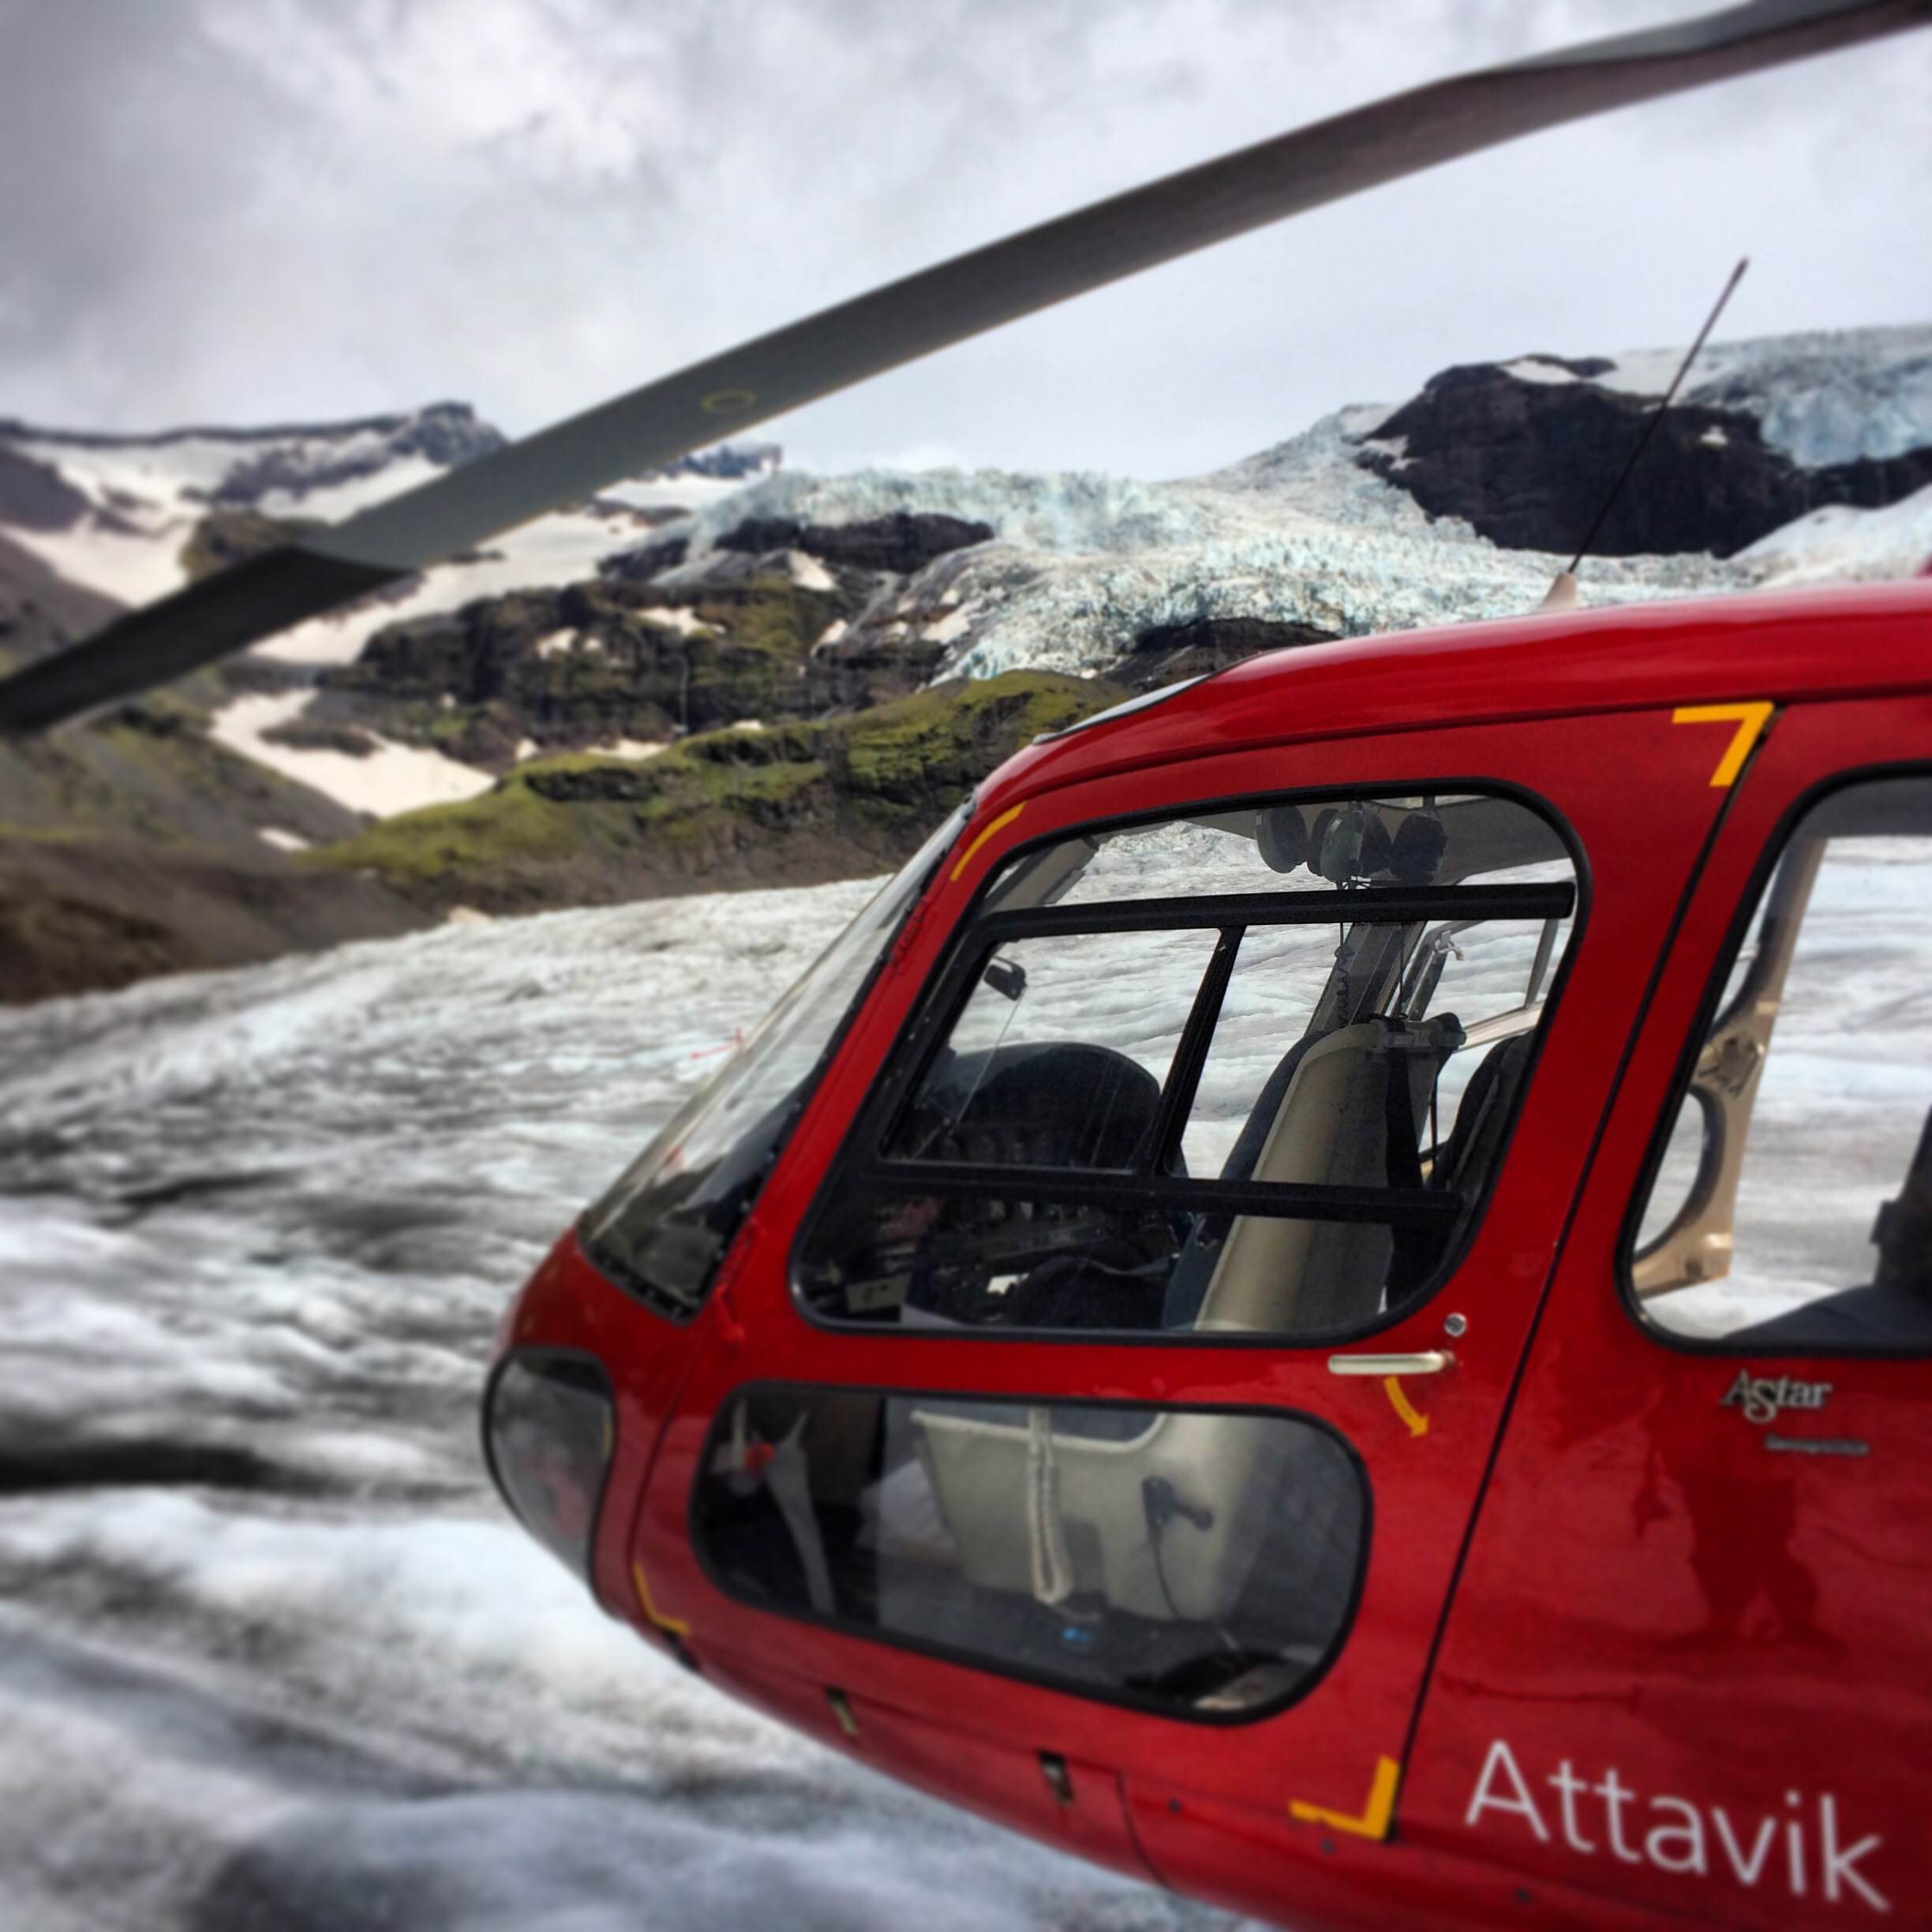 Helicopter Glacier Hike